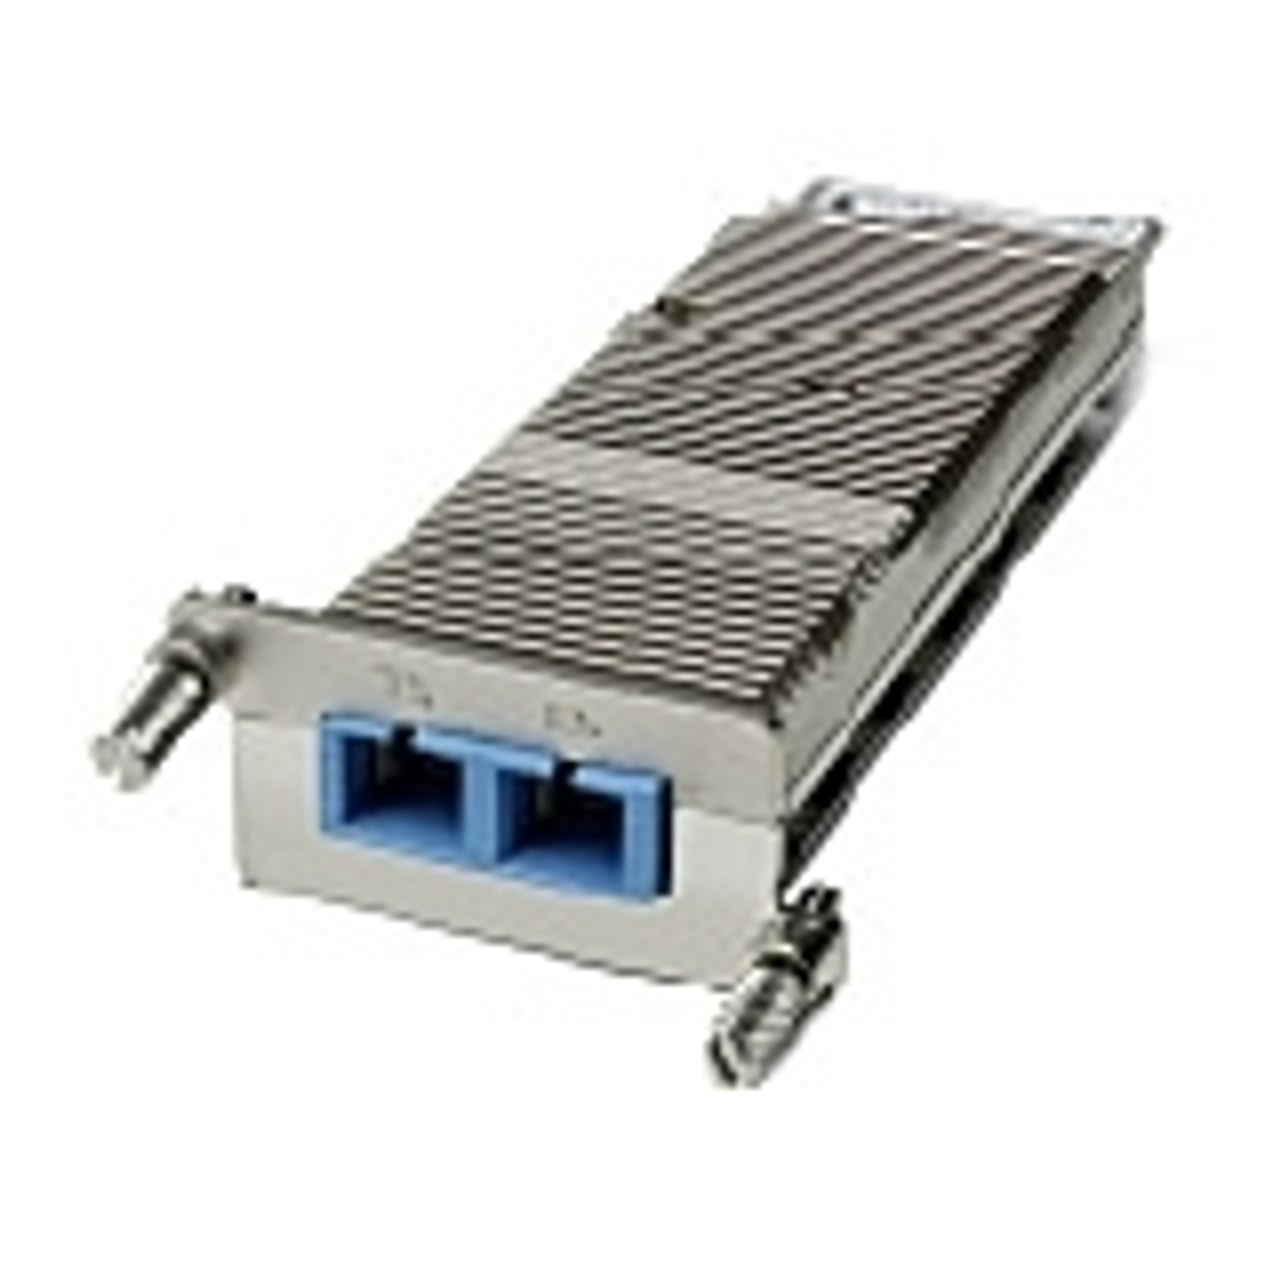 XENPAK-10GB-LX4 Cisco 10Gbps 10GBase-LX4 Multi-mode Fiber 300m 1310nm Duplex SC Connector XENPAK Transceiver Module (Refurbished)